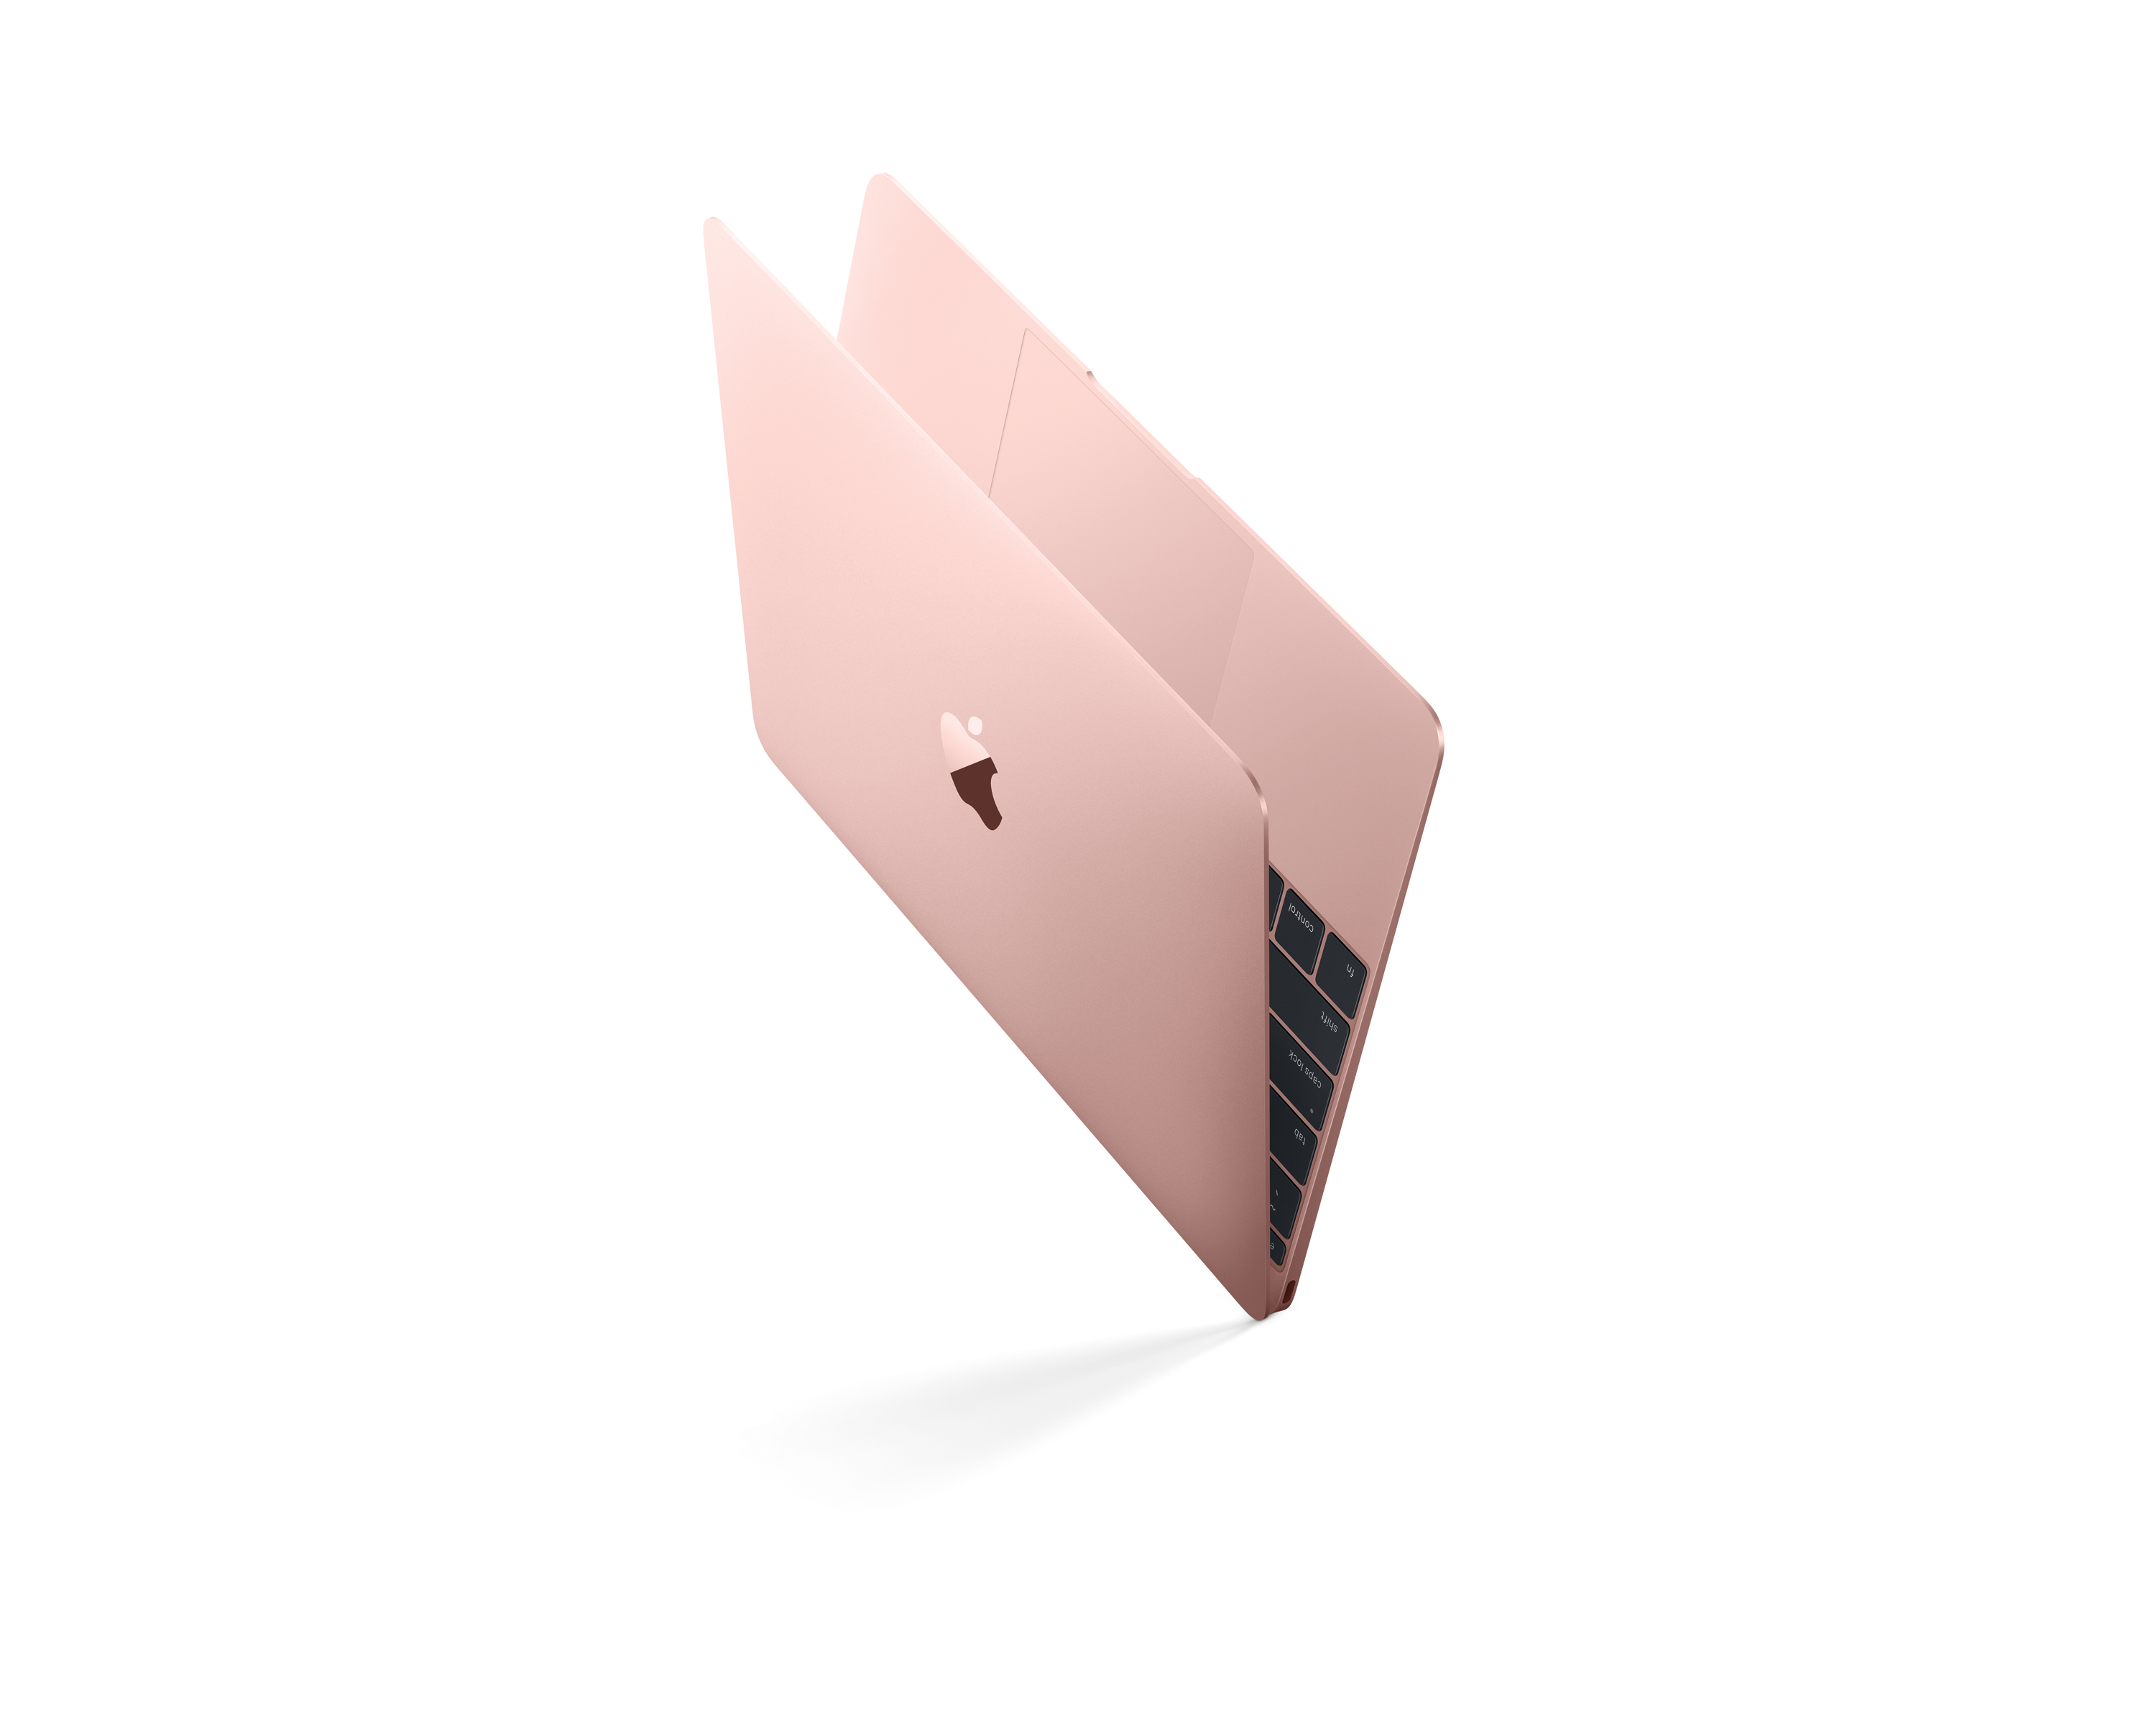 激安超安値  gold 12inch MacBook ノートPC